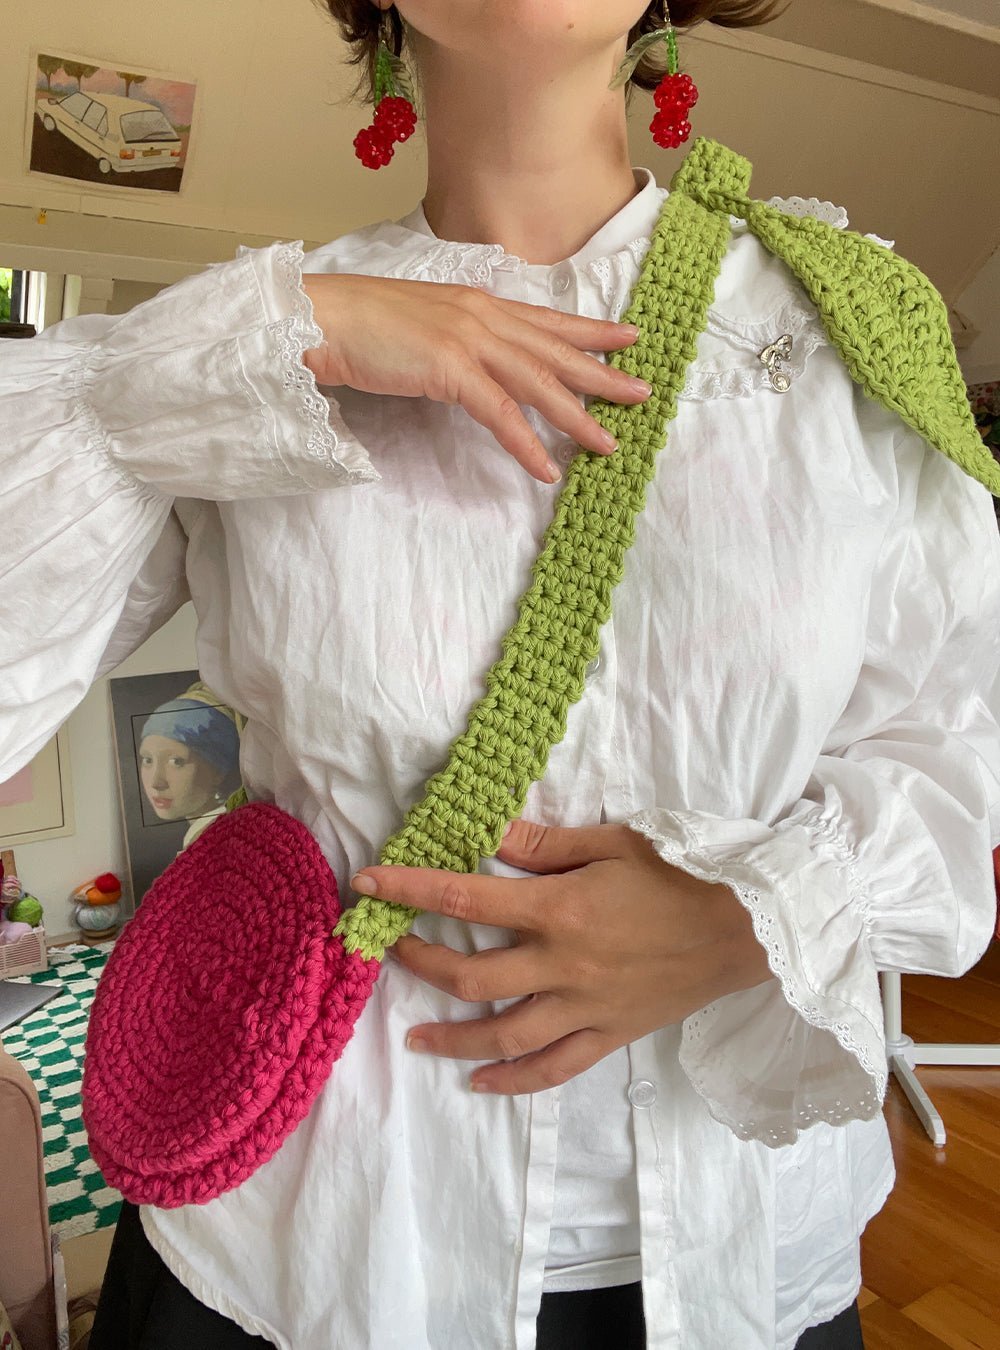 Crochet bag pattern - cherry fruit design